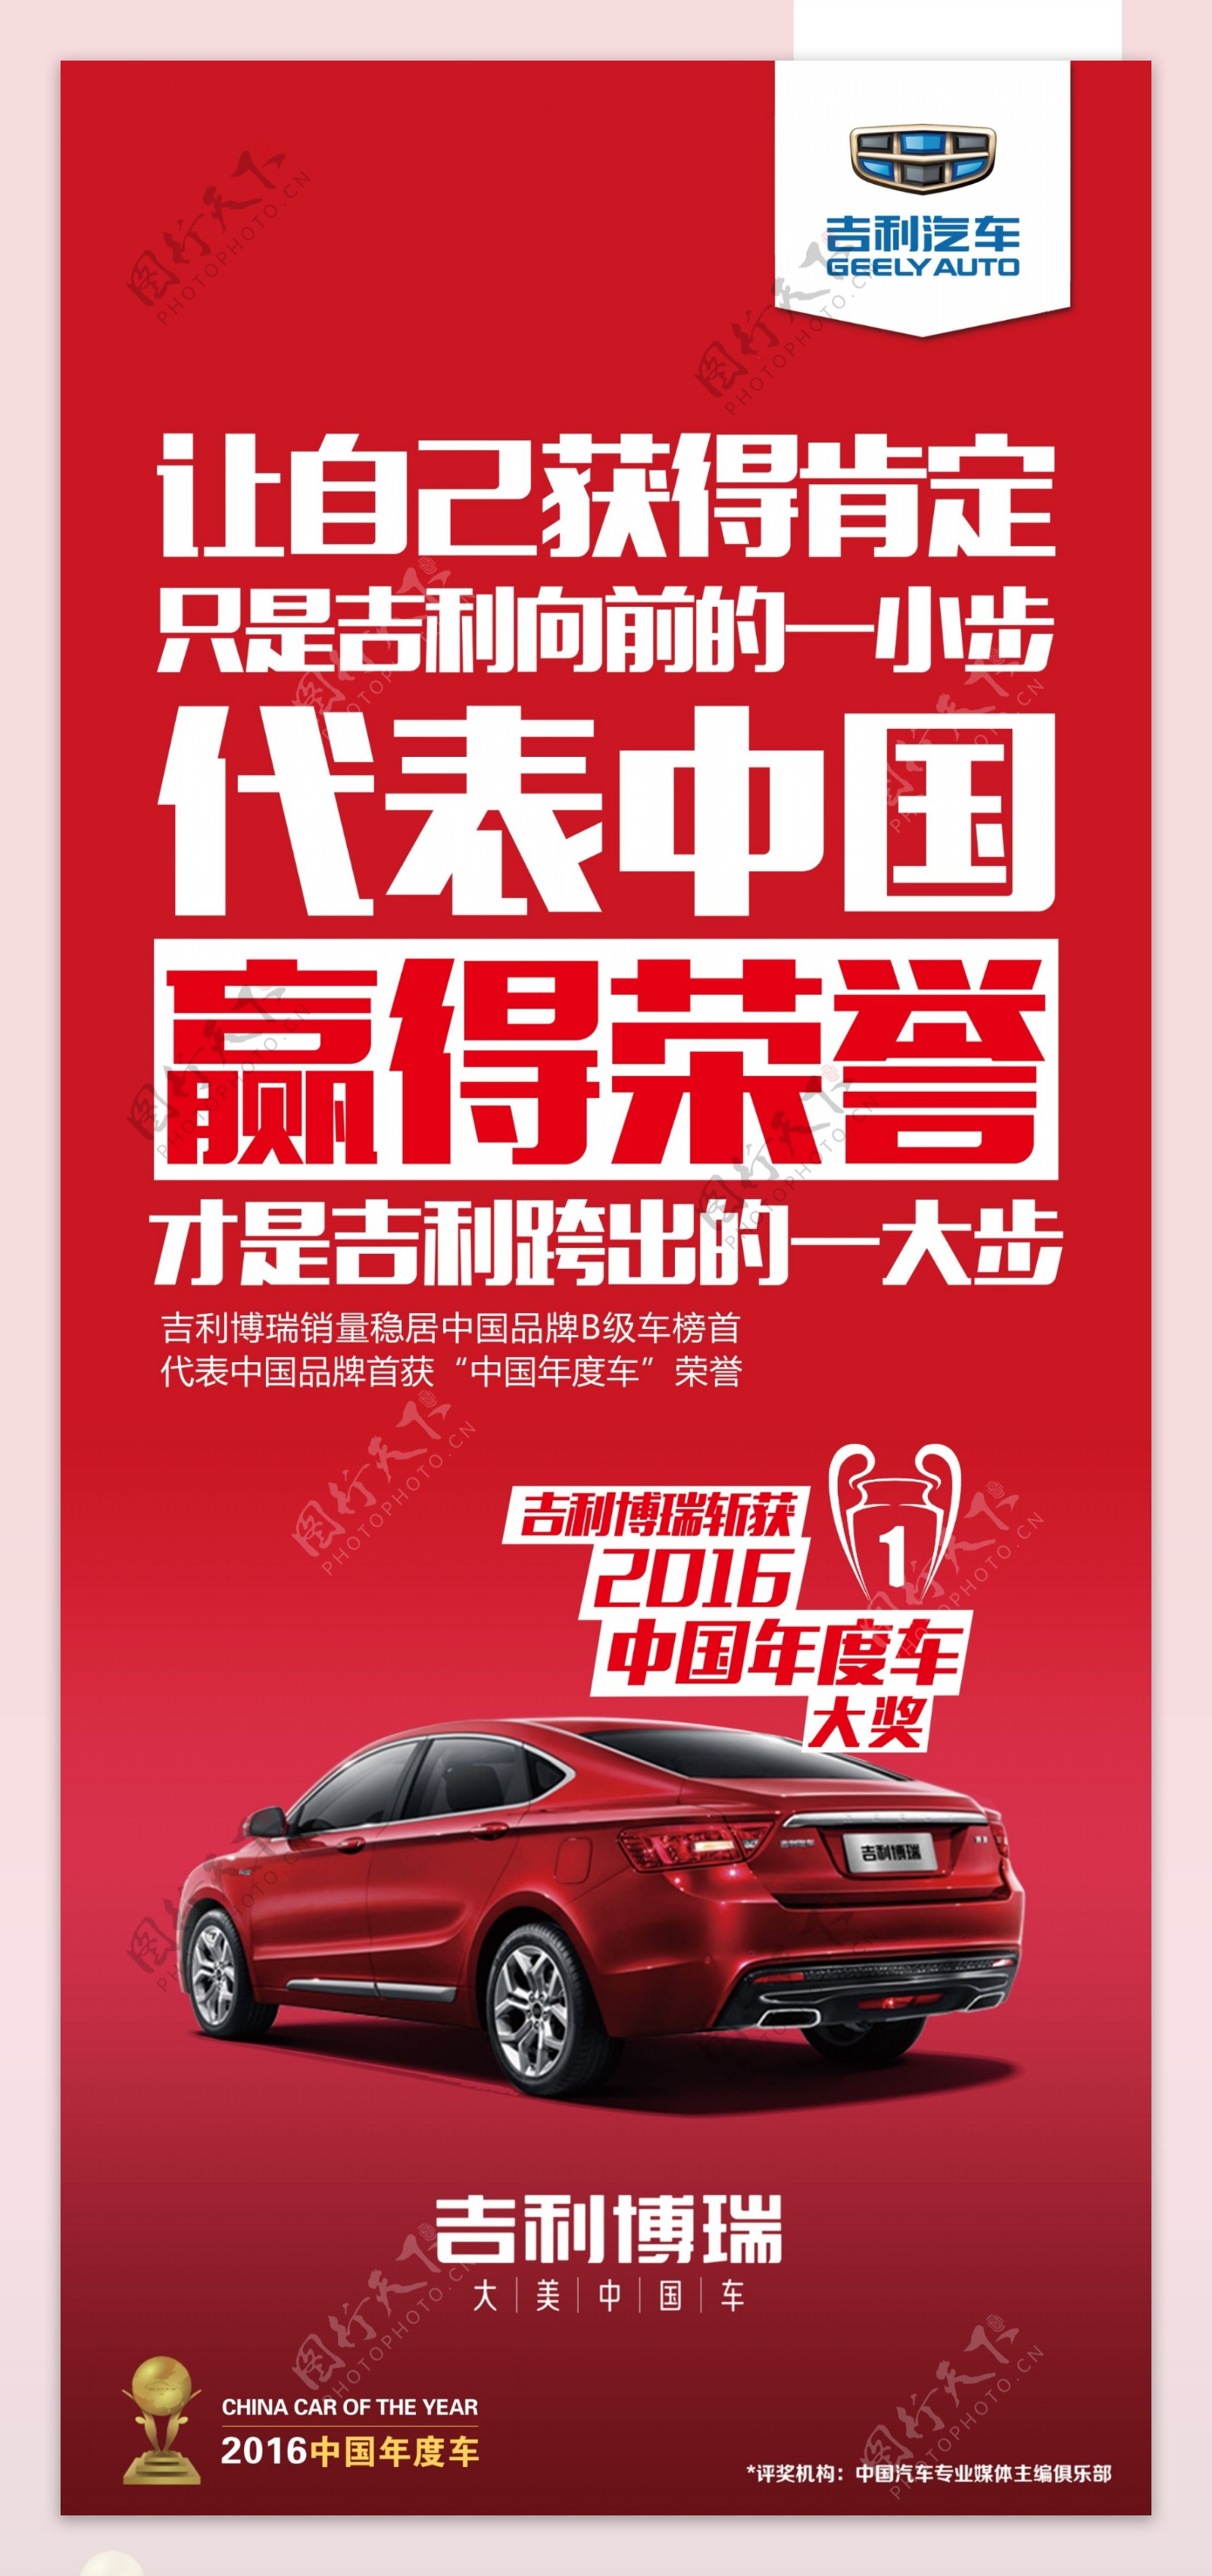 吉利博瑞汽车中国红海报